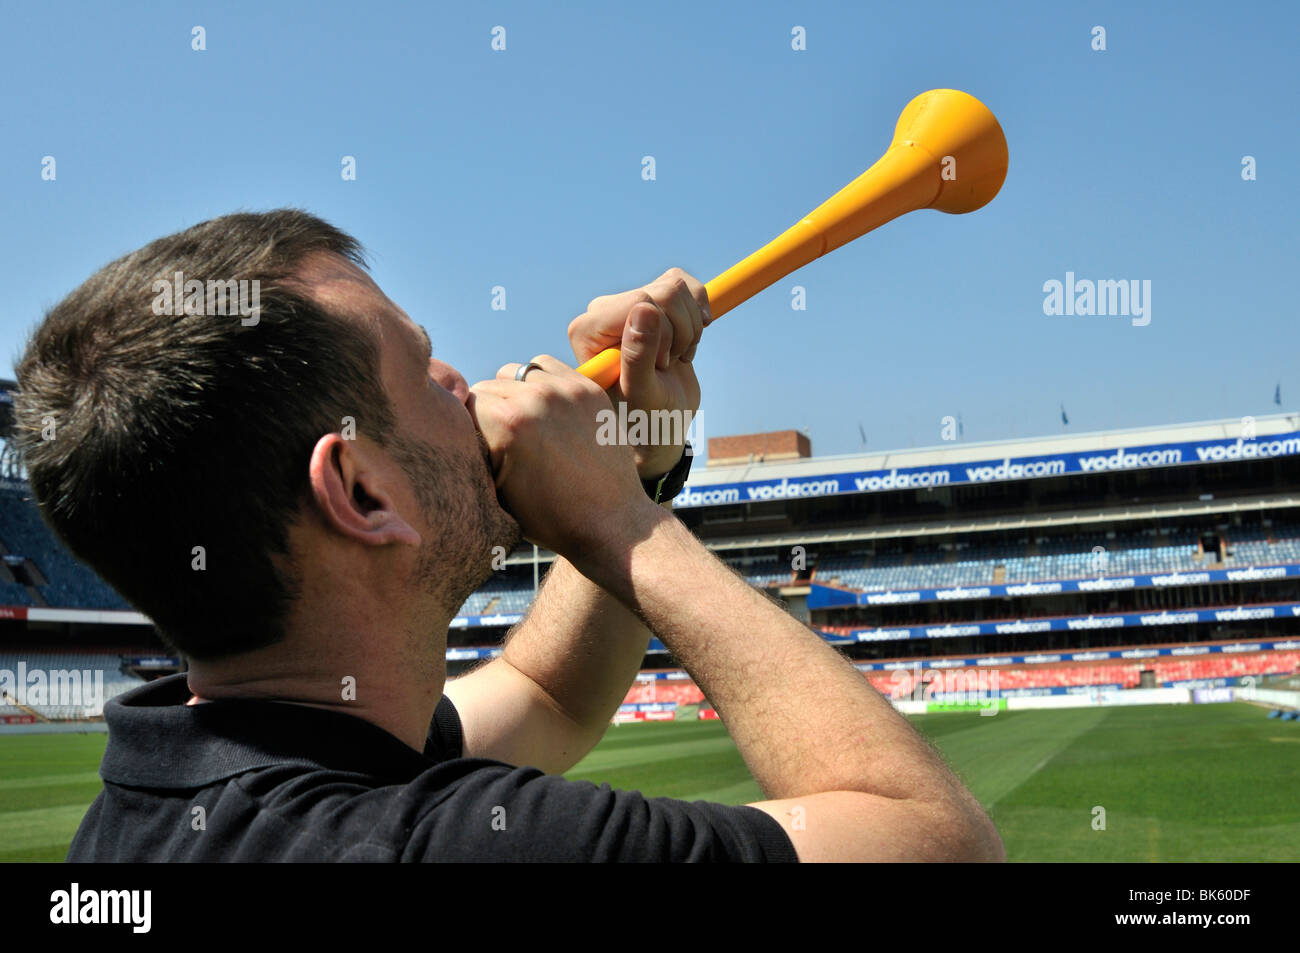 FIFA WM 2010, Fußball-Fan mit einer Vuvuzela, das Musikinstrument des südafrikanischen Fußballfans, Loftus Versfeld Stadion Stockfoto